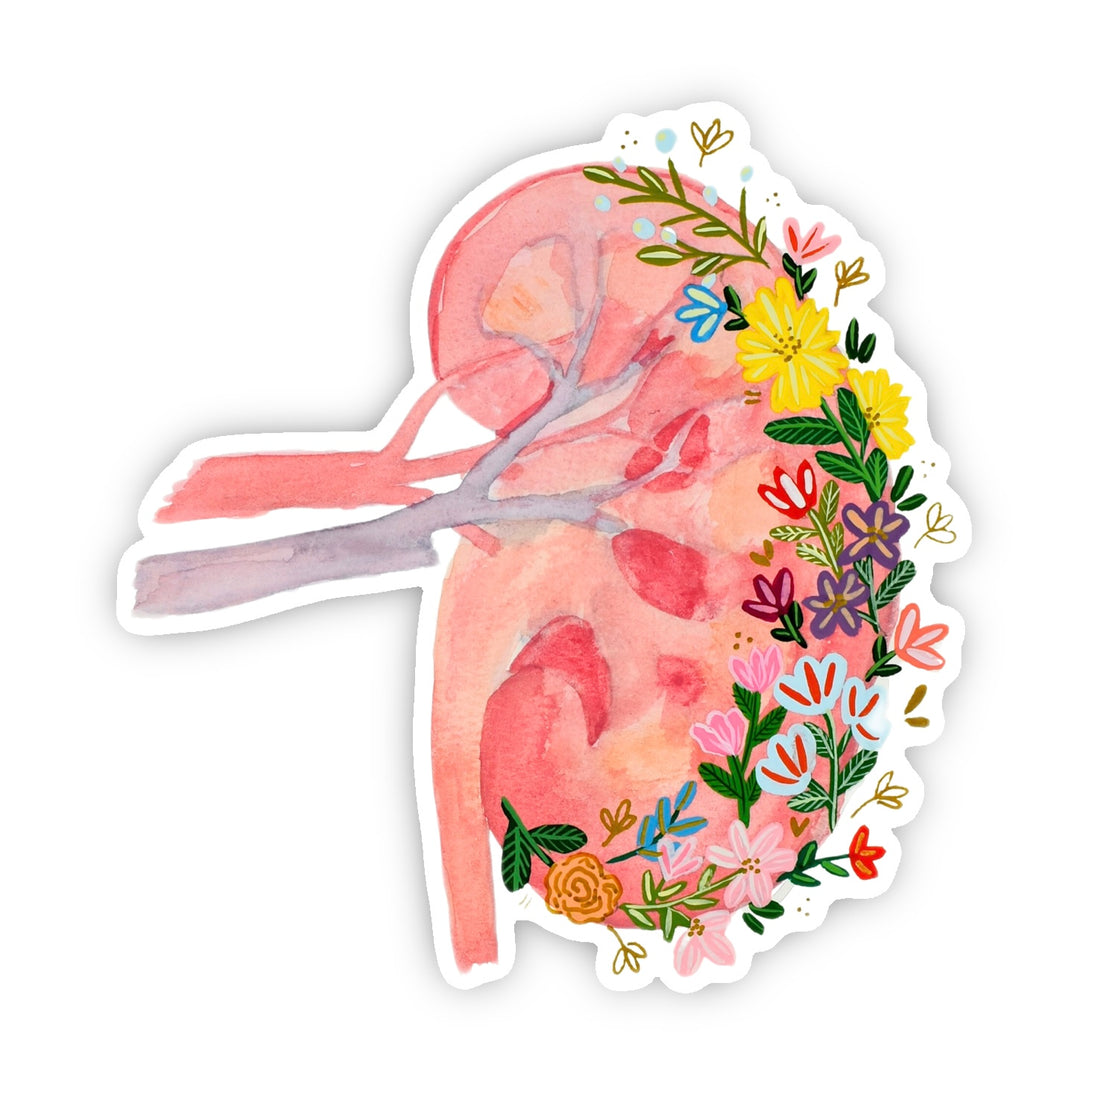 Kidney Sticker